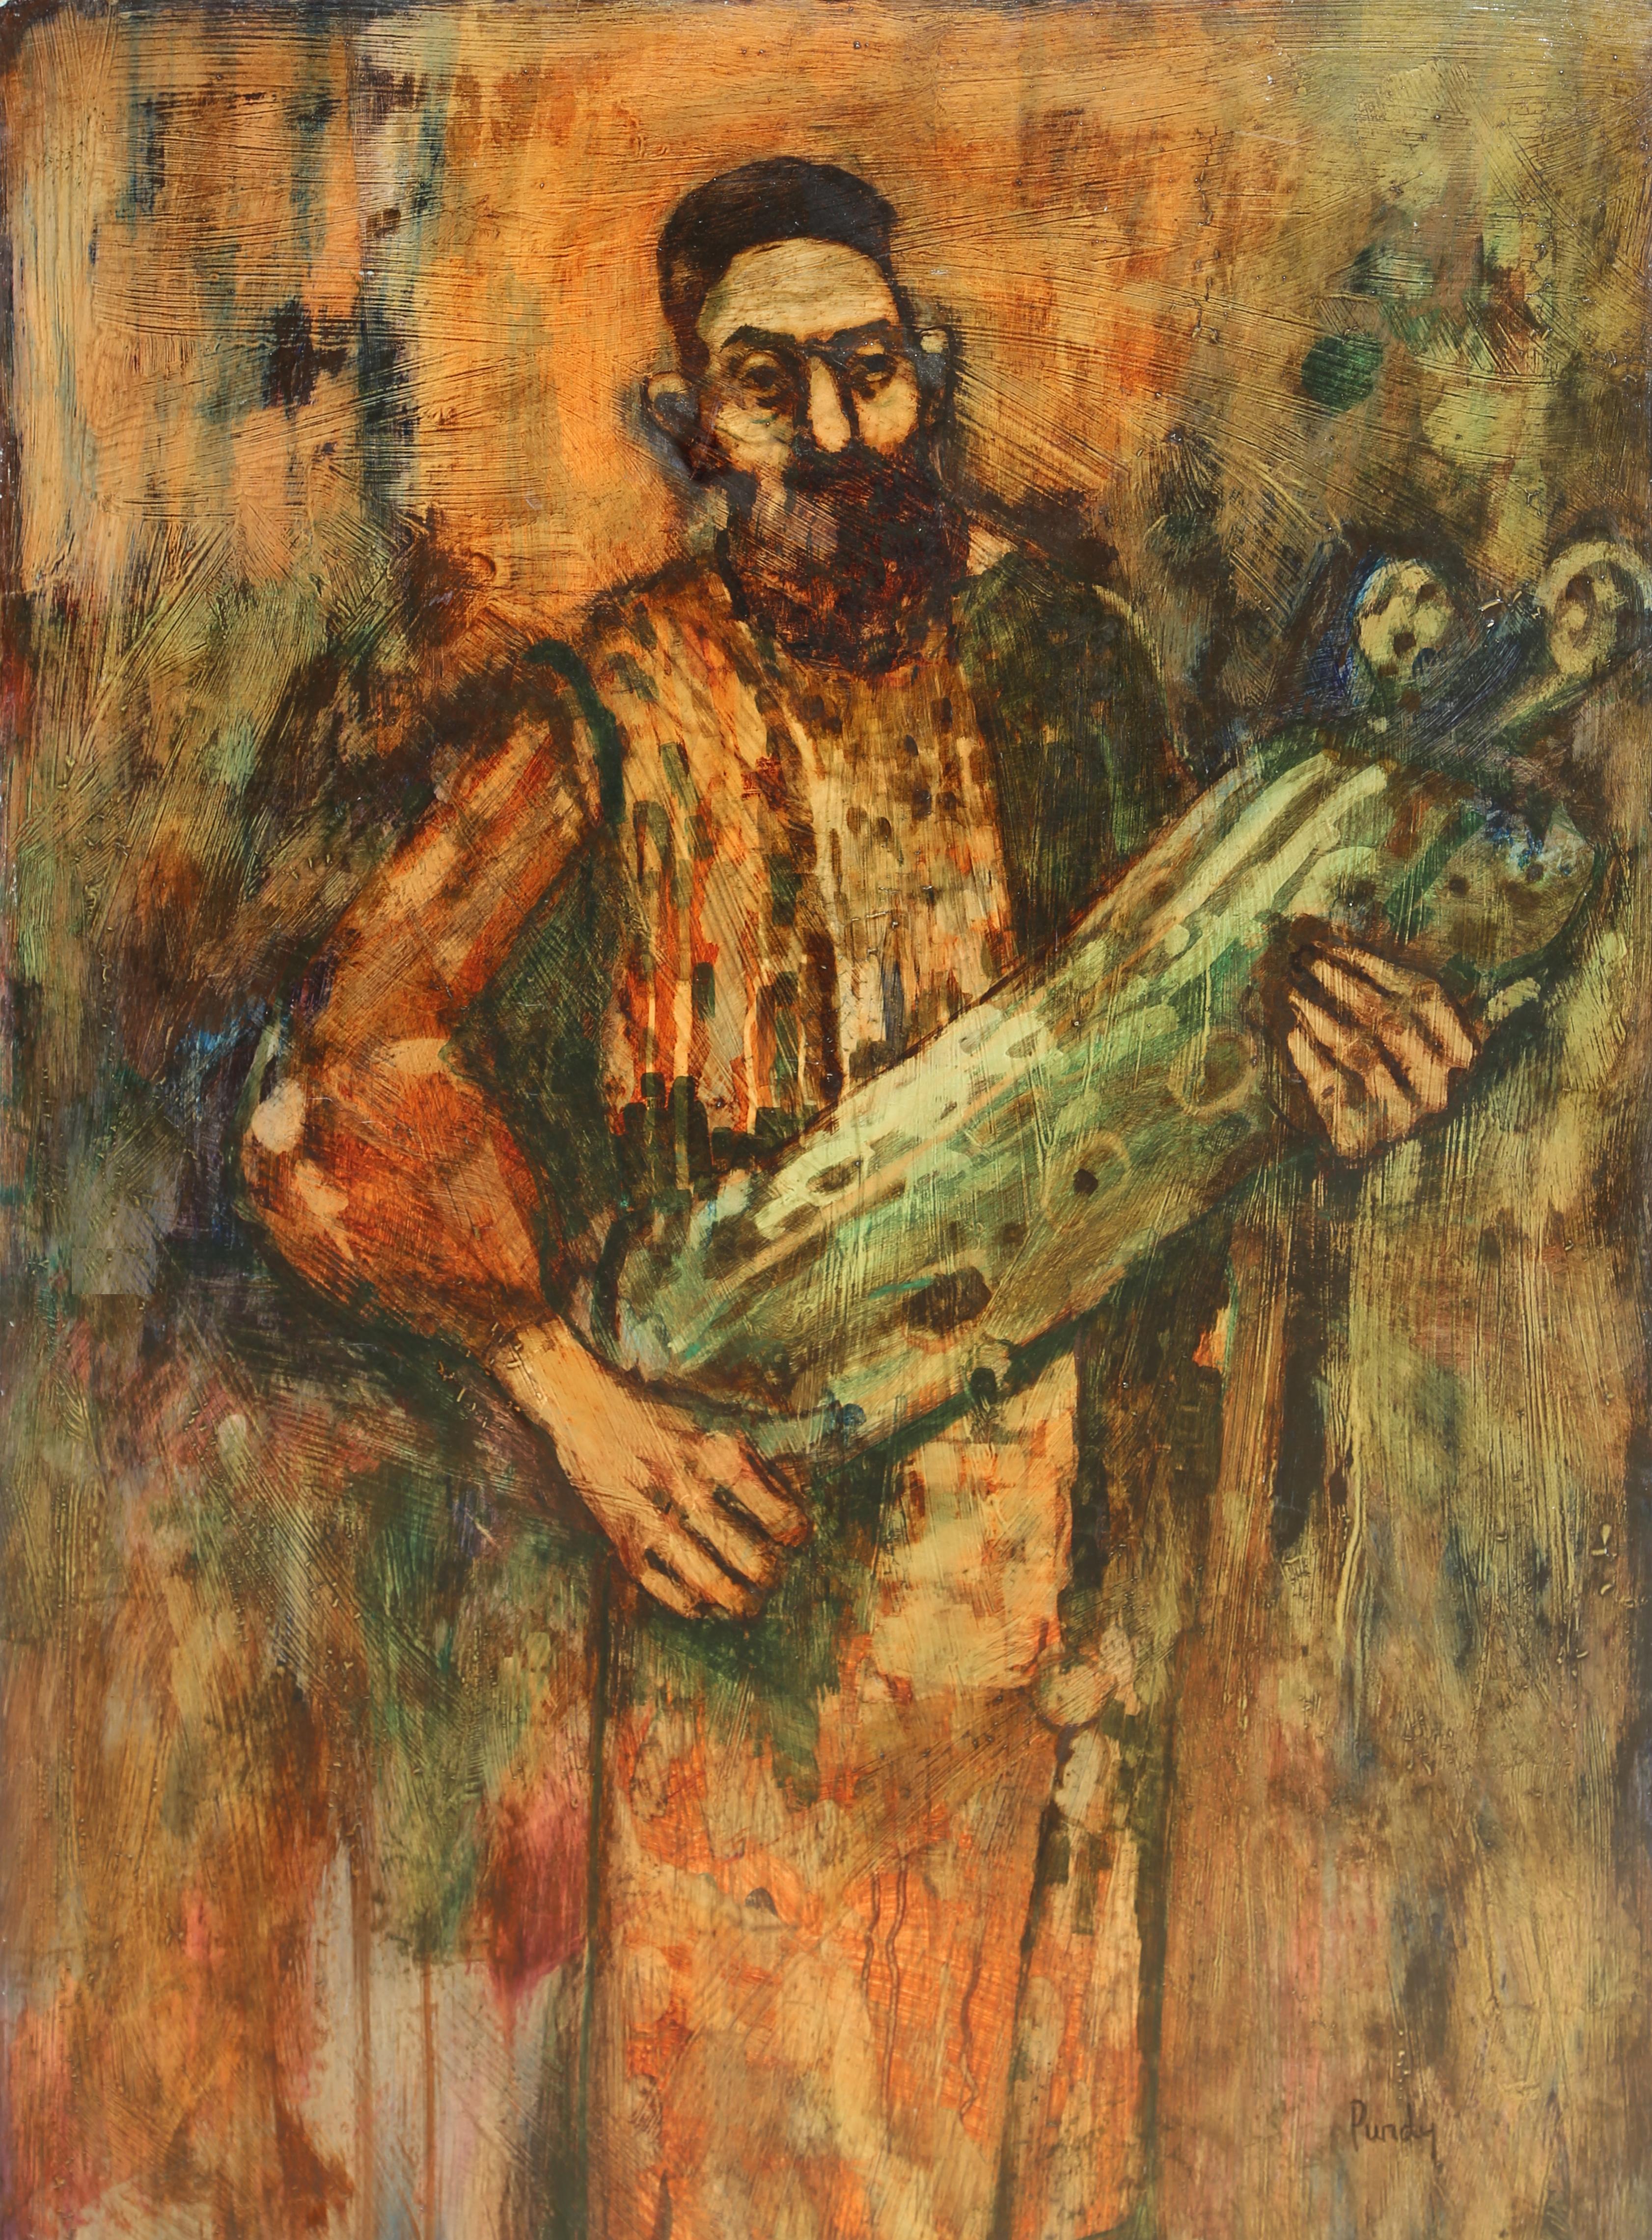 Rabbi mit Torah in der Hand, Ölgemälde von Donald Roy Purdy